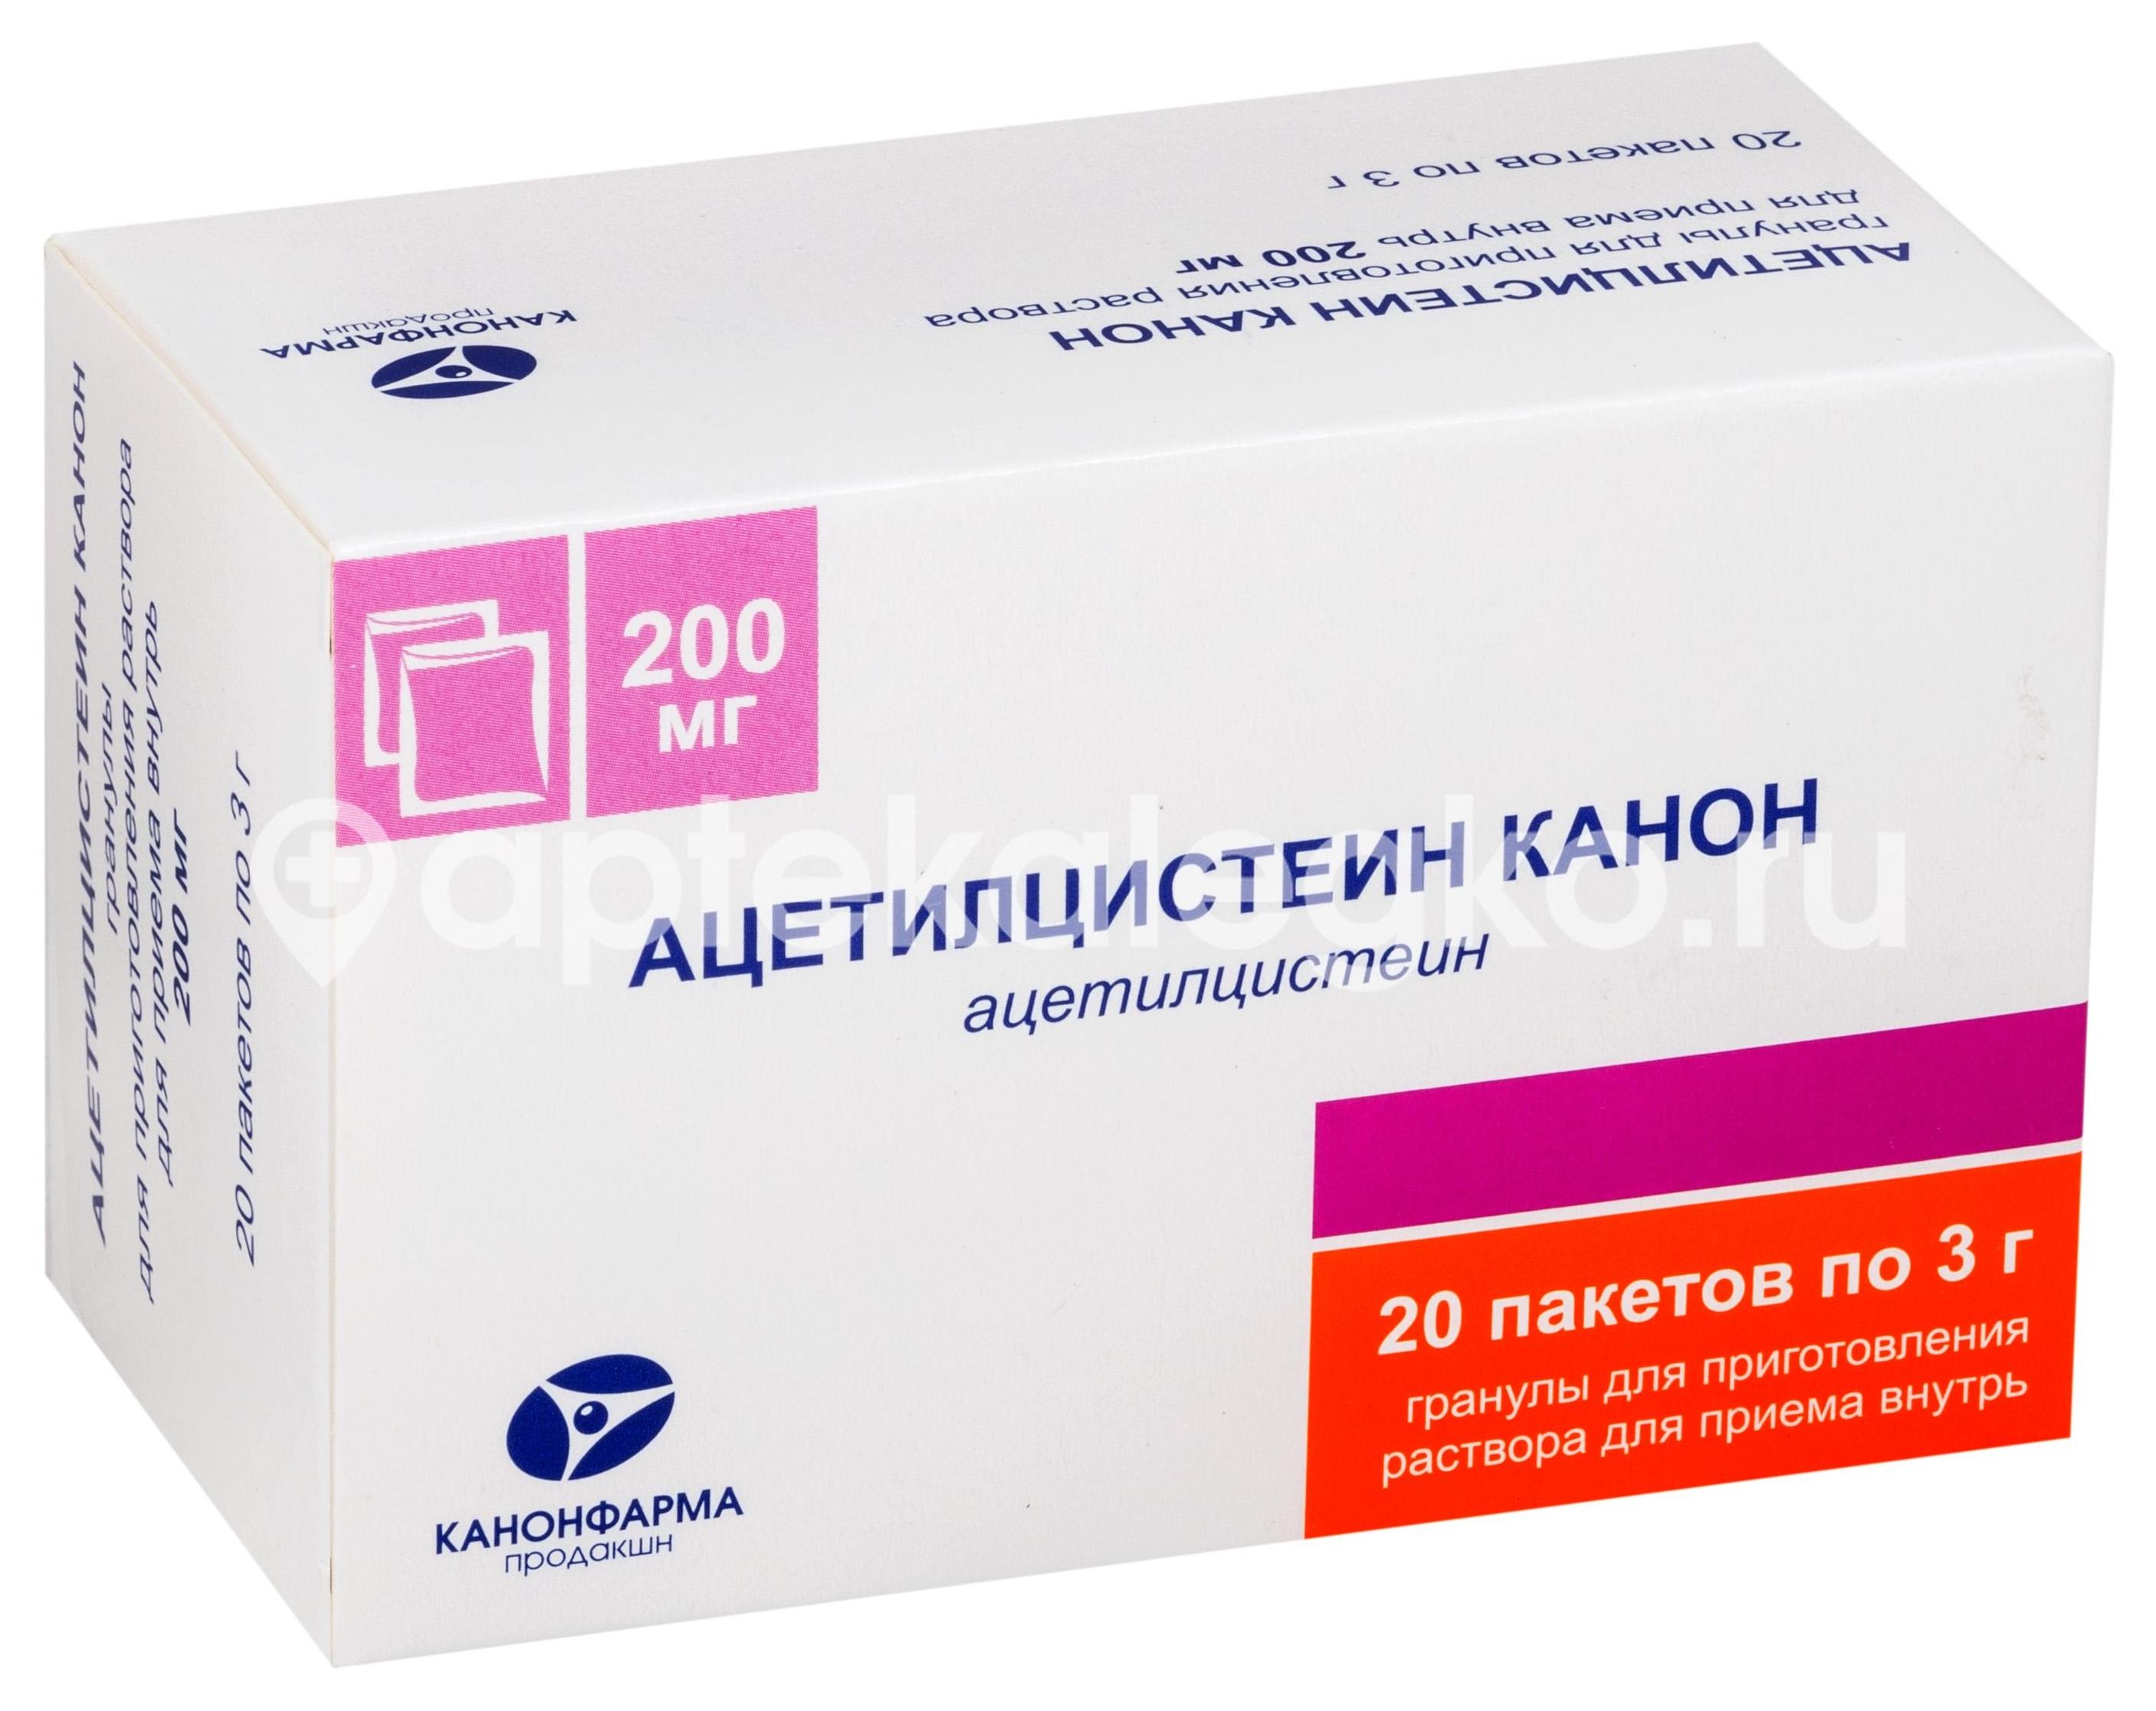 Ацетилцистеин канон 200мг. 20шт. гранулы для приготовления раствора для внутреннего применения - 1